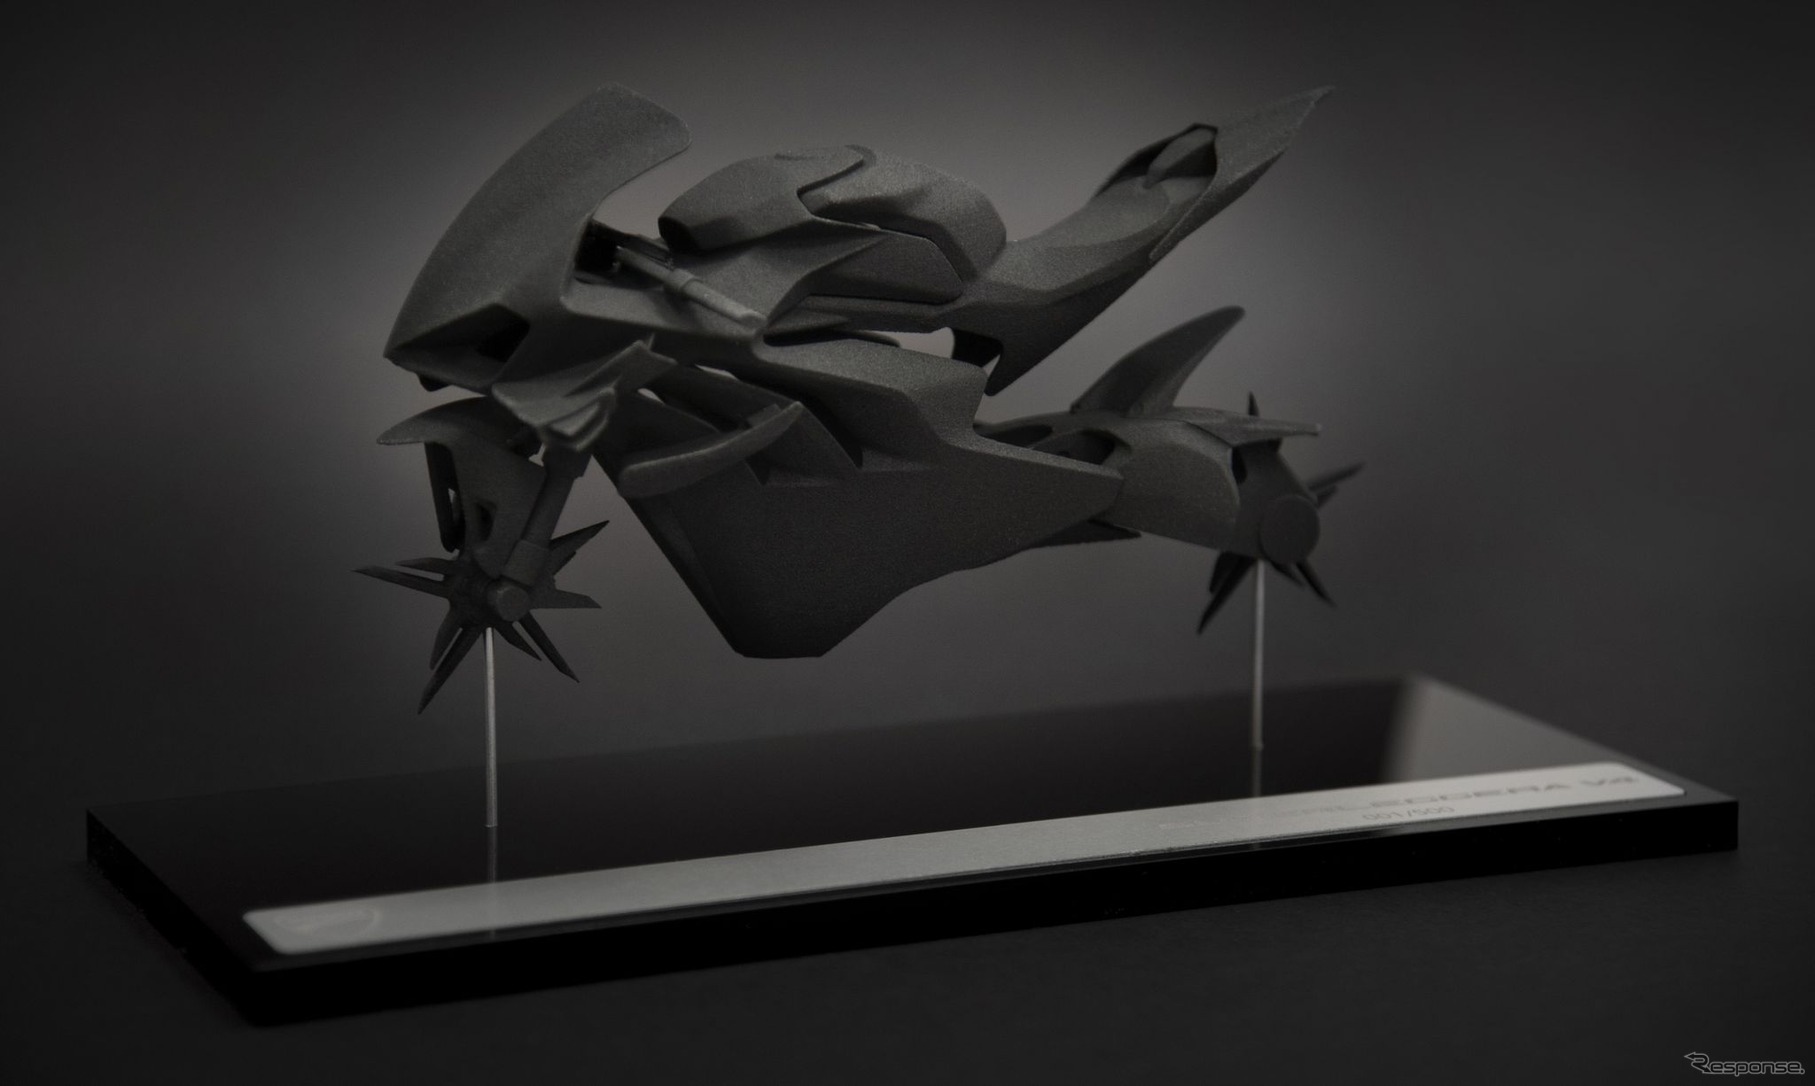 ドゥカティ・スーパーレッジェーラ V4の顧客に贈られる未来的なエアロダイナミクス形状をモデリングした10分の1スケールモデル